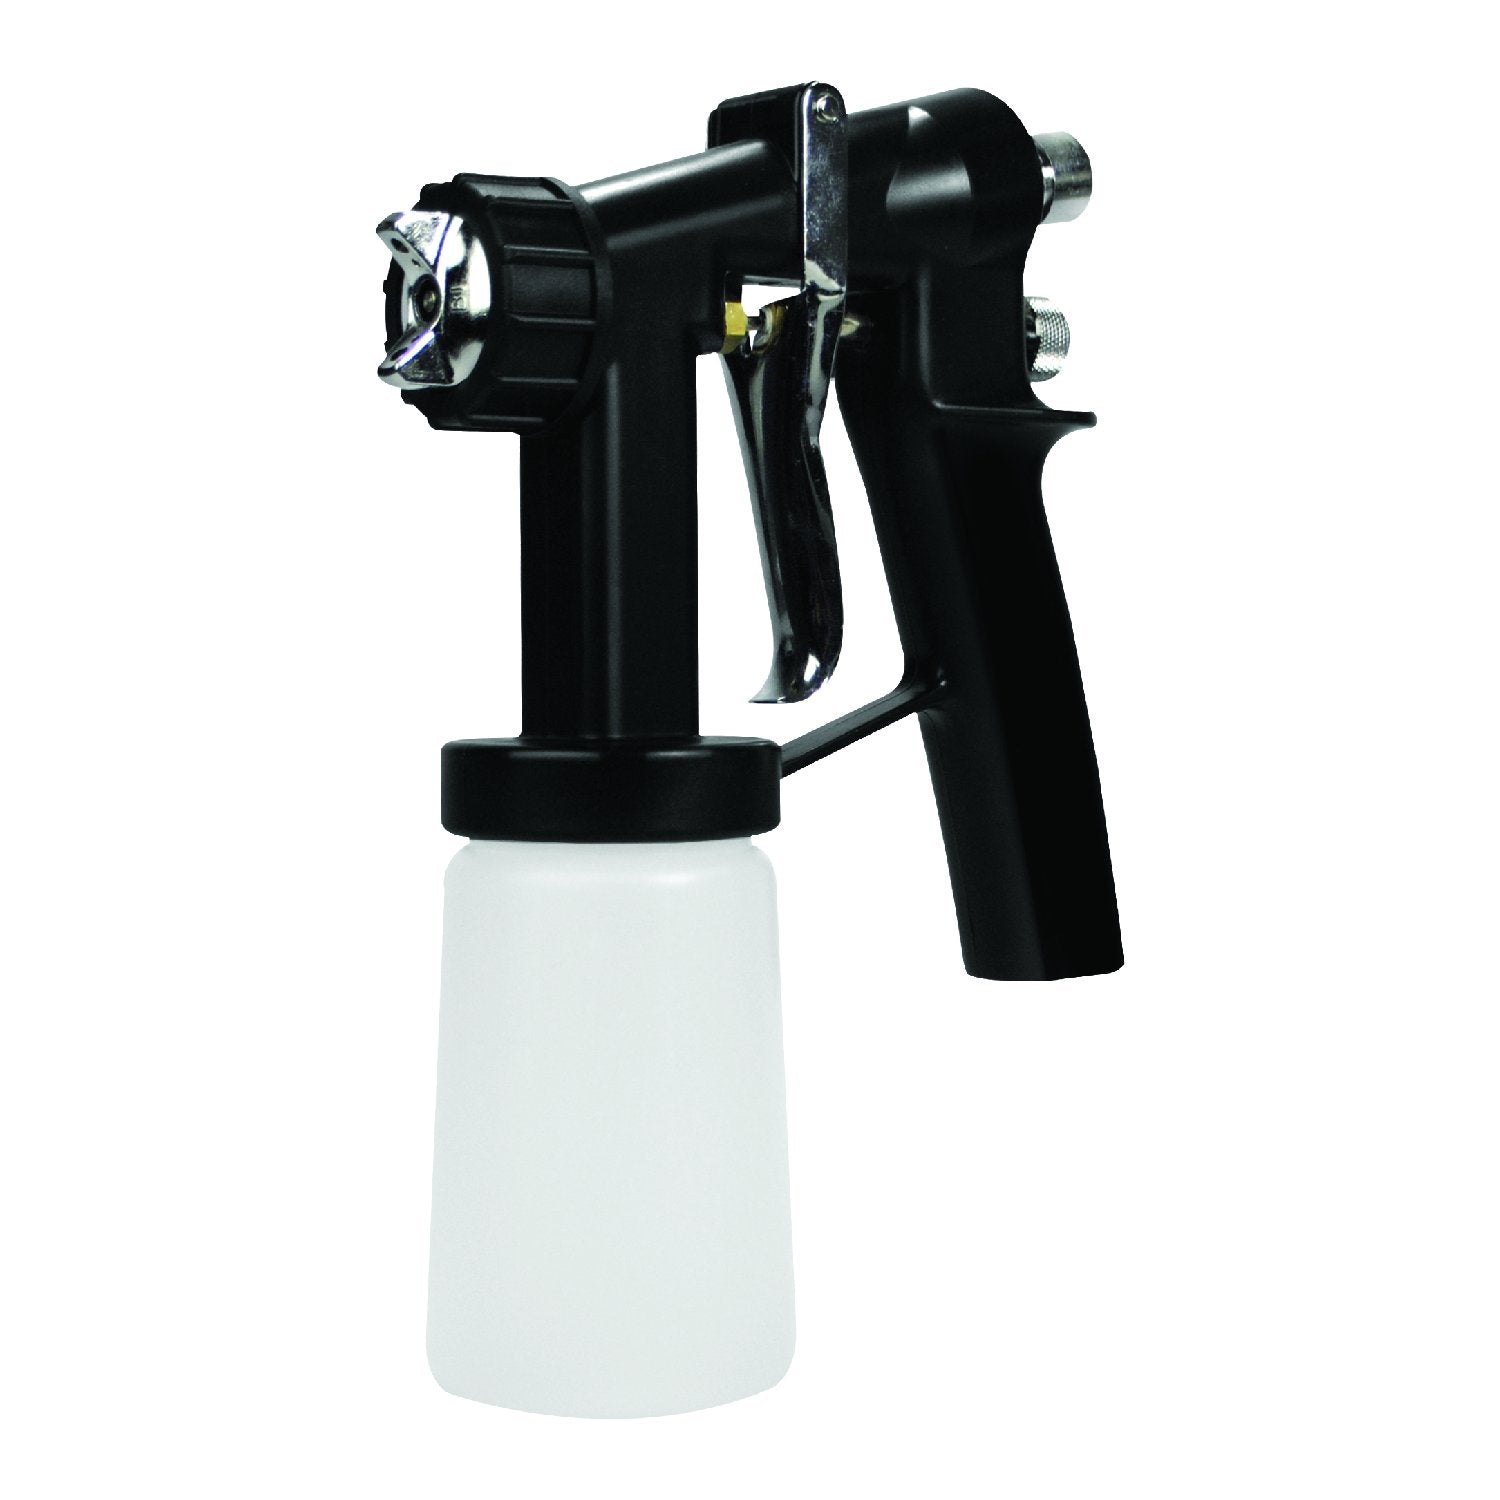 Norvell Sunless Kit - M1000 Mobile HVLP Spray Tan Airbrush Machine